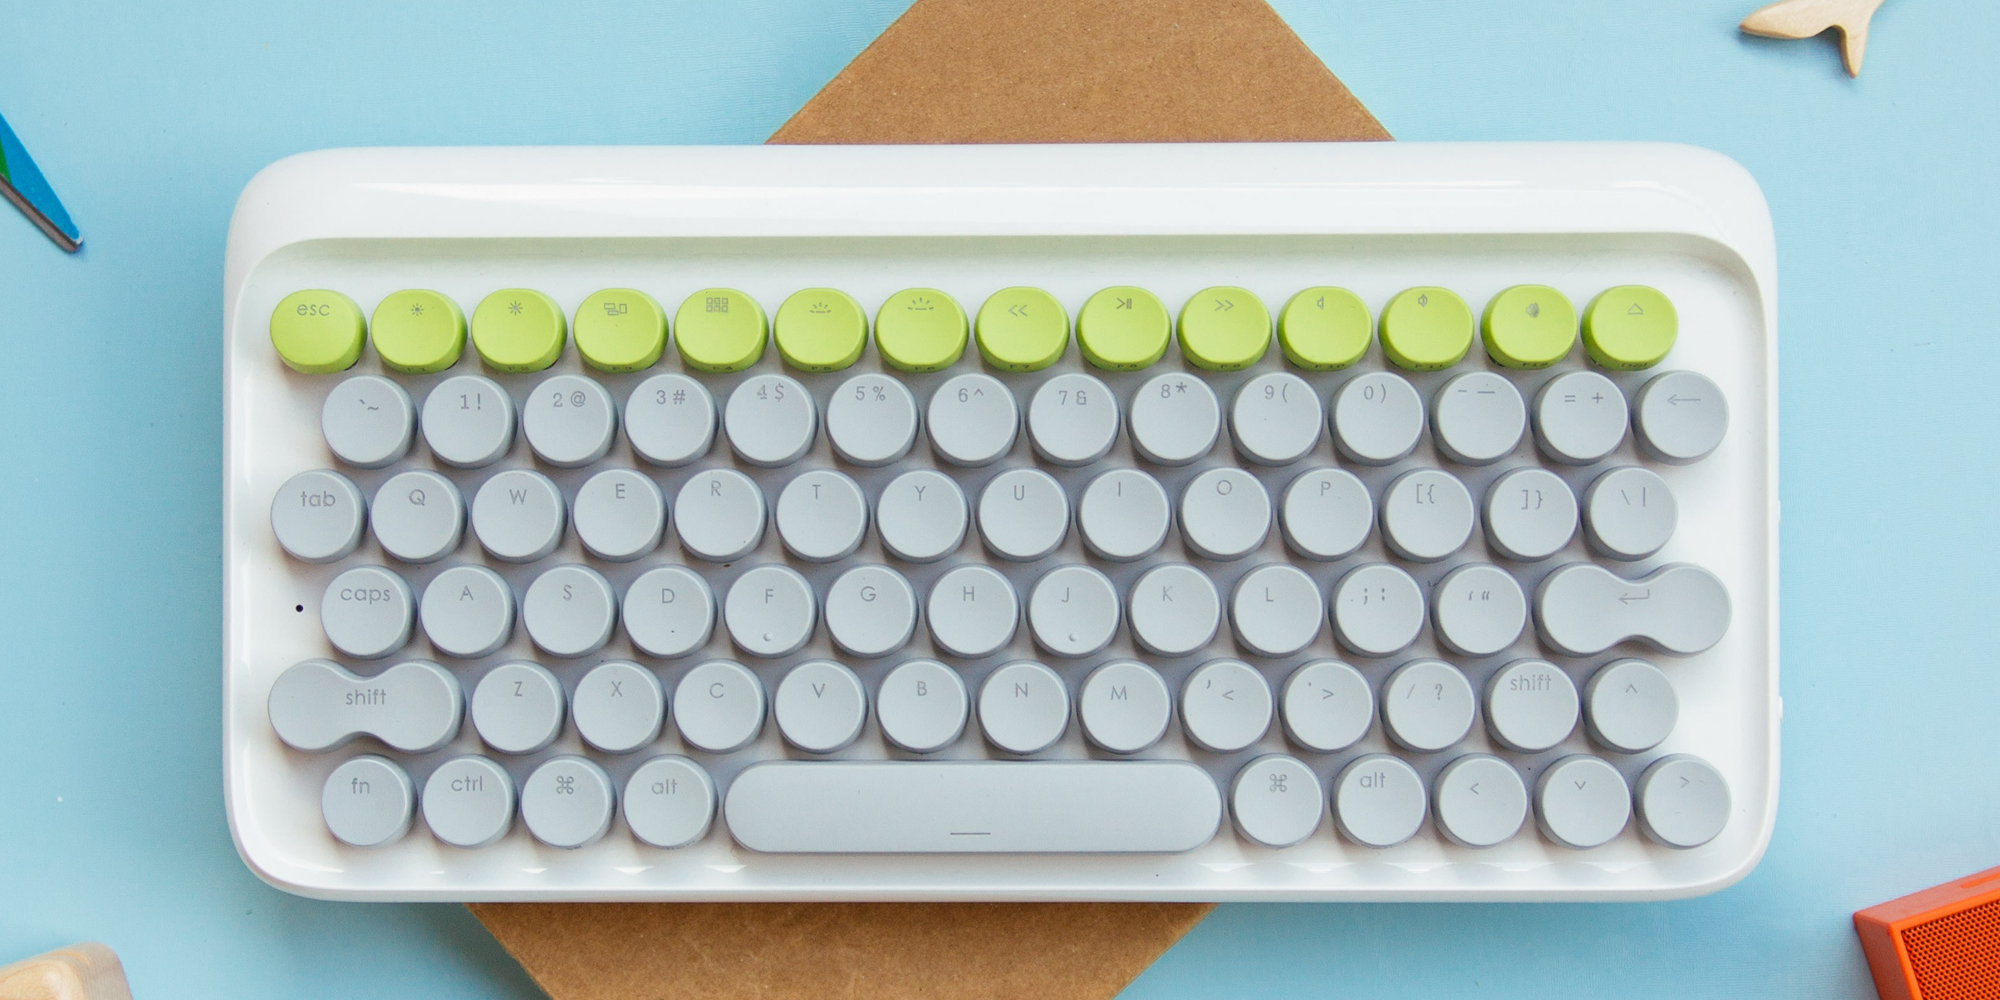 typewriter wireless keyboard